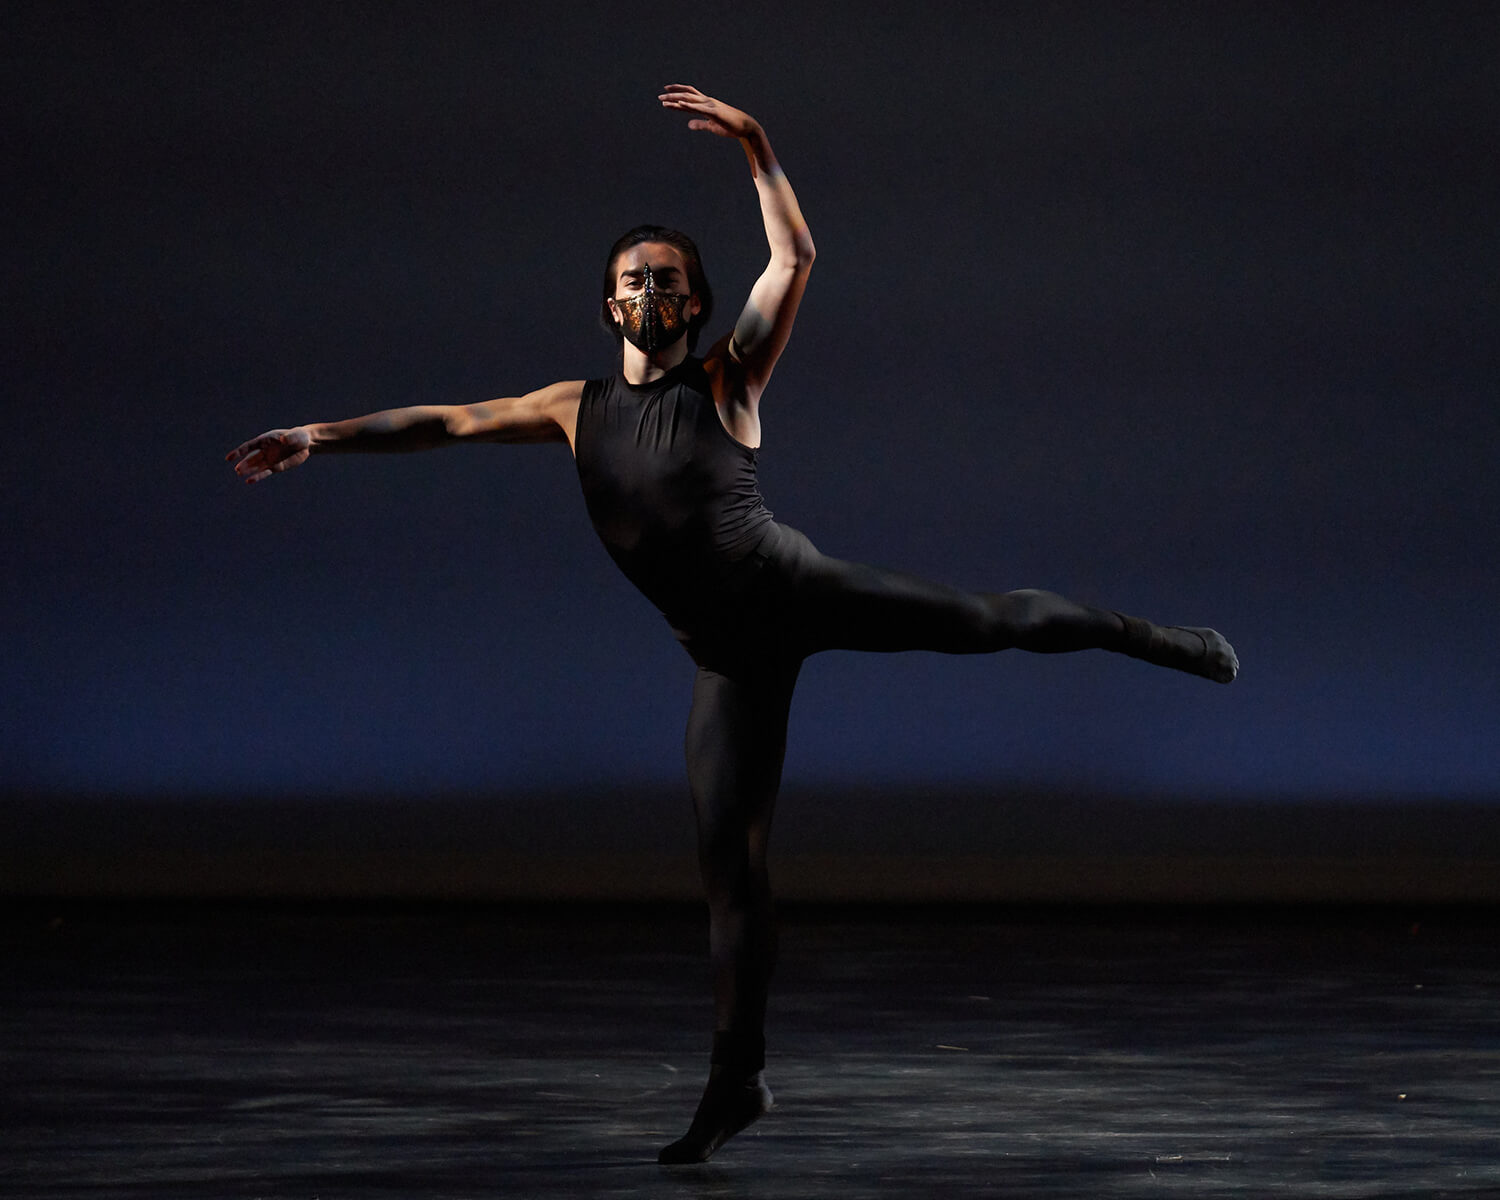 Dancer in black against a black background